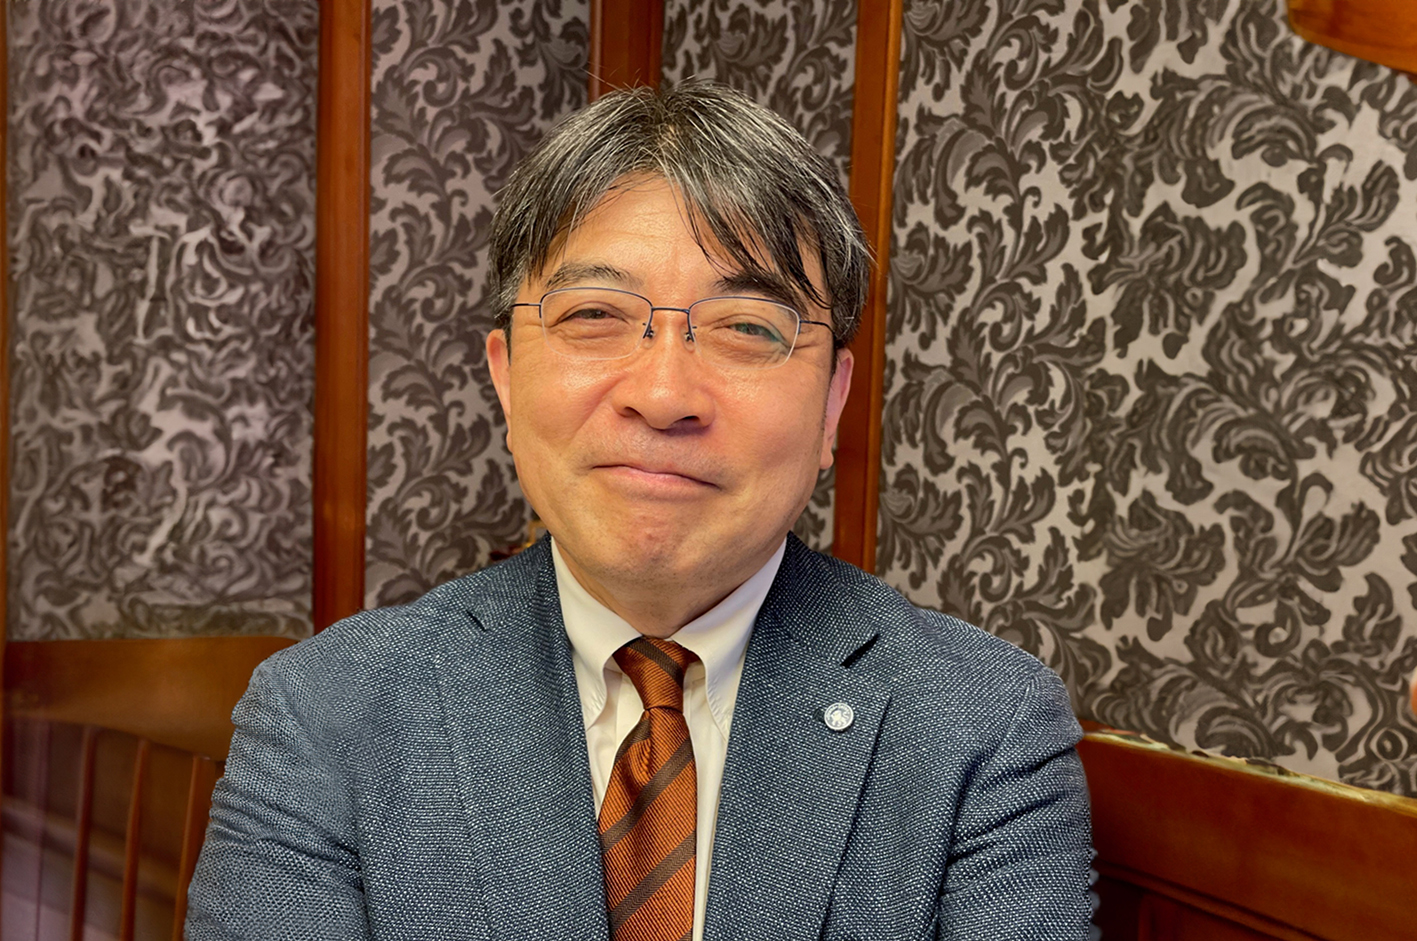 Interview with Akio Naito, President of Grand Seiko